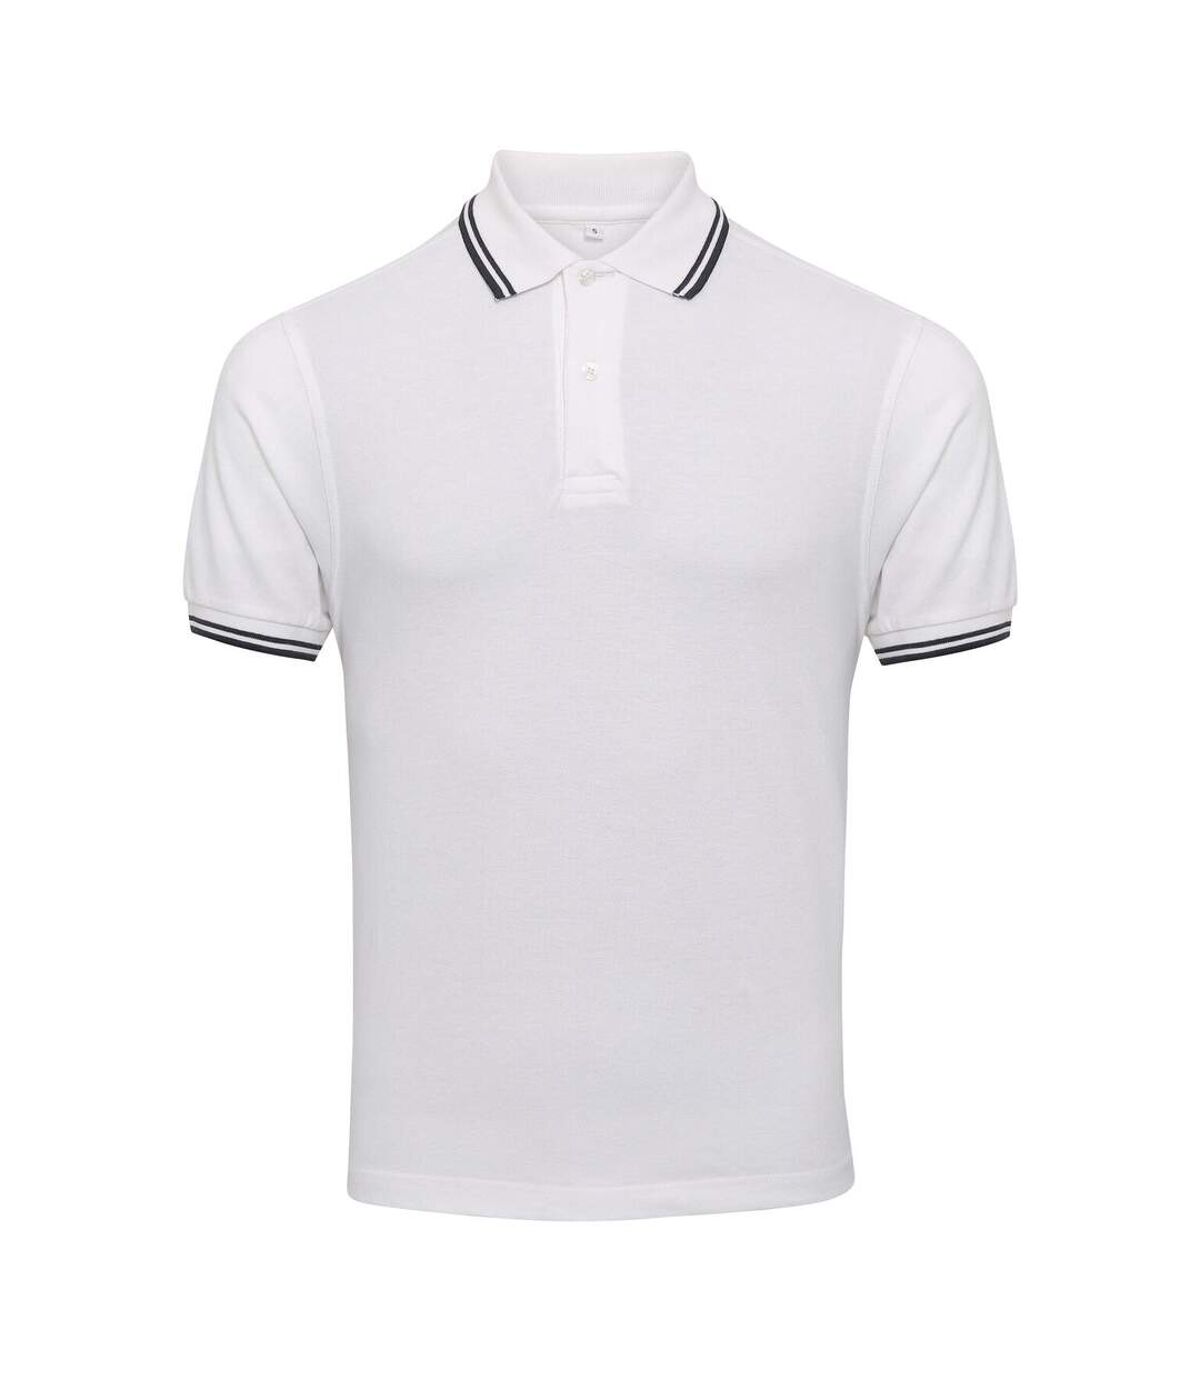 AWDis Mens Stretch Tipped Piqu Polo Shirt (White/Navy) - UTPC3155